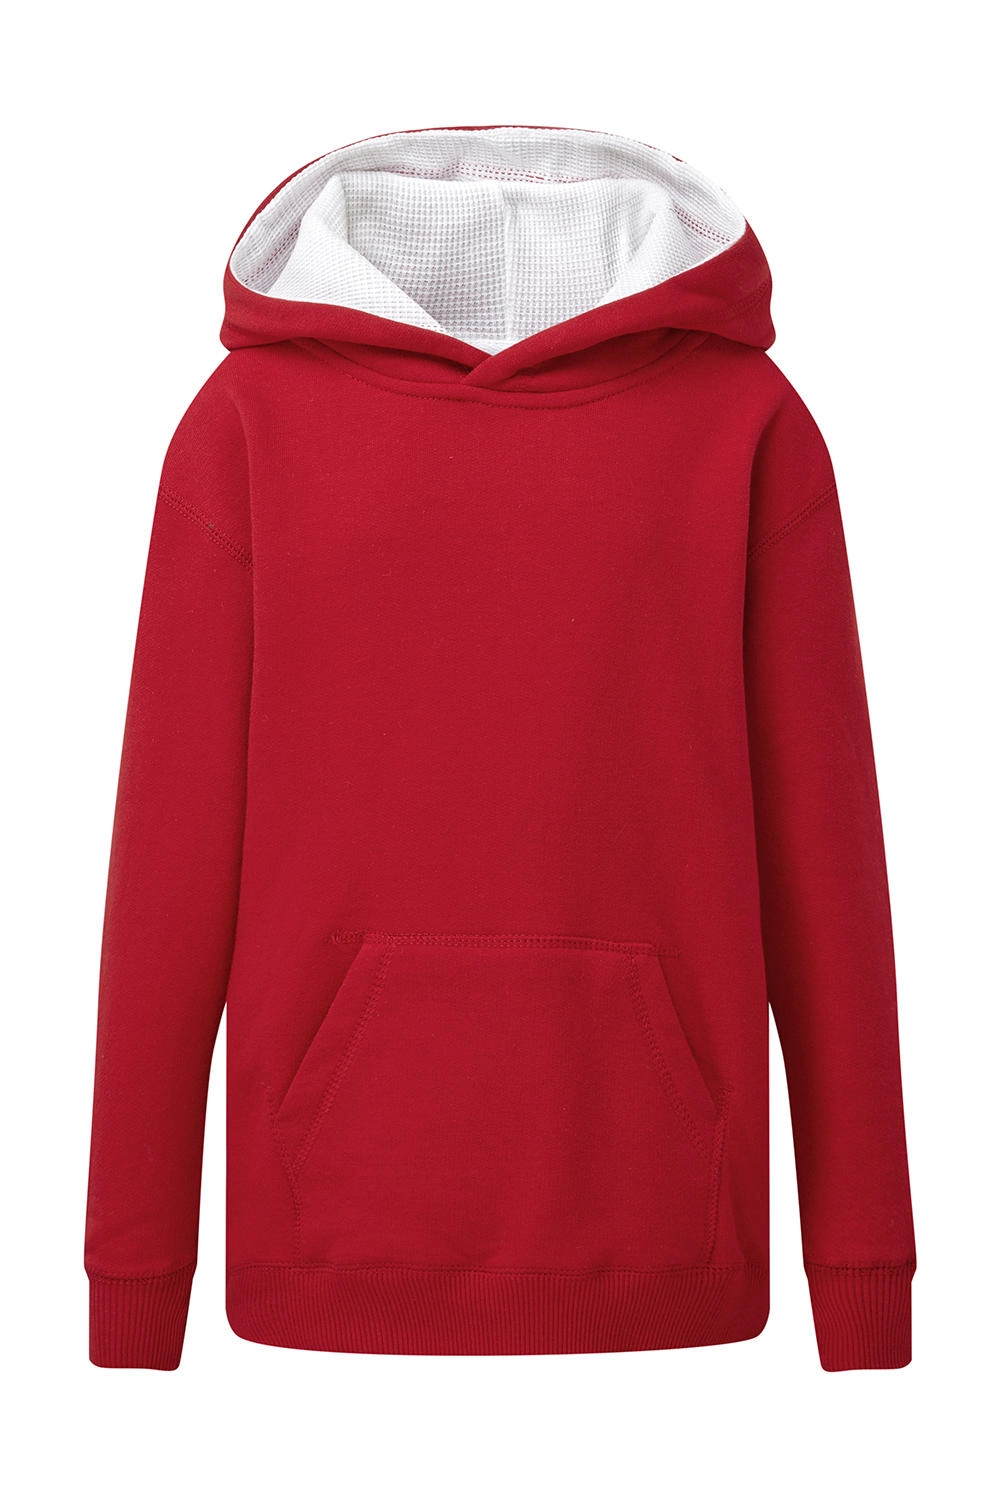 Contrast Hooded Sweatshirt Kids zum Besticken und Bedrucken in der Farbe Red/White mit Ihren Logo, Schriftzug oder Motiv.